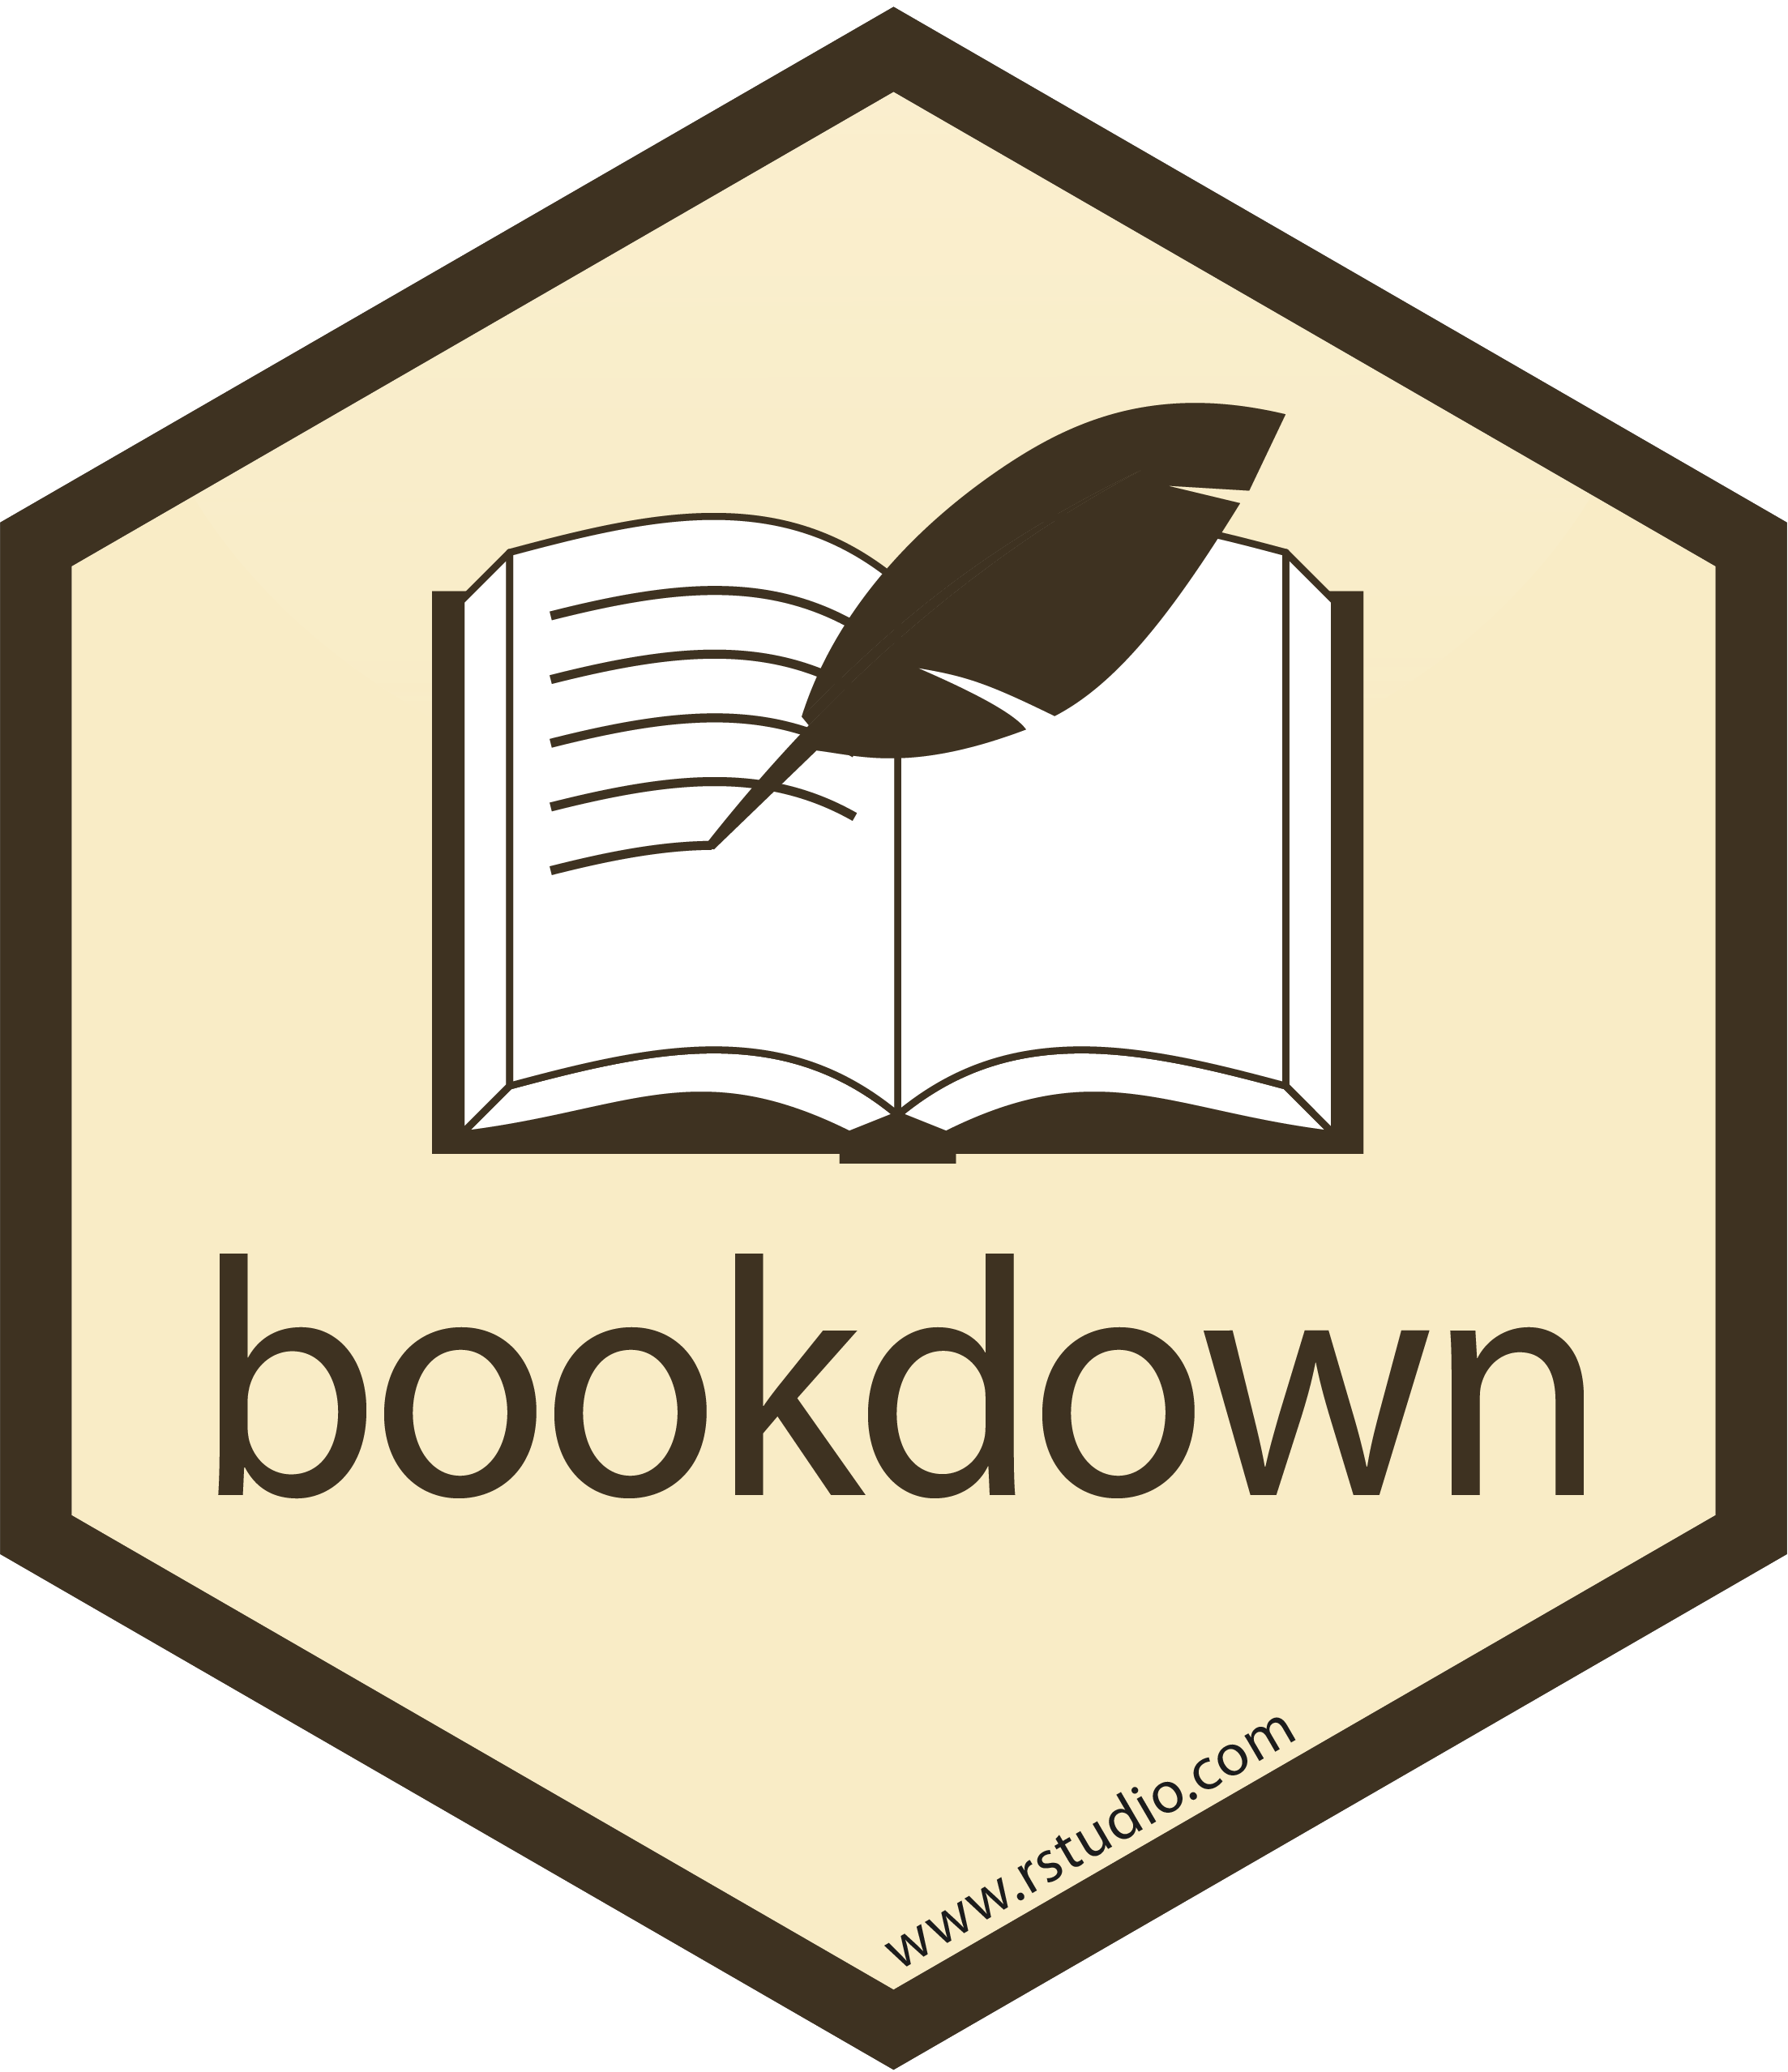 Bookdown hex-sticker